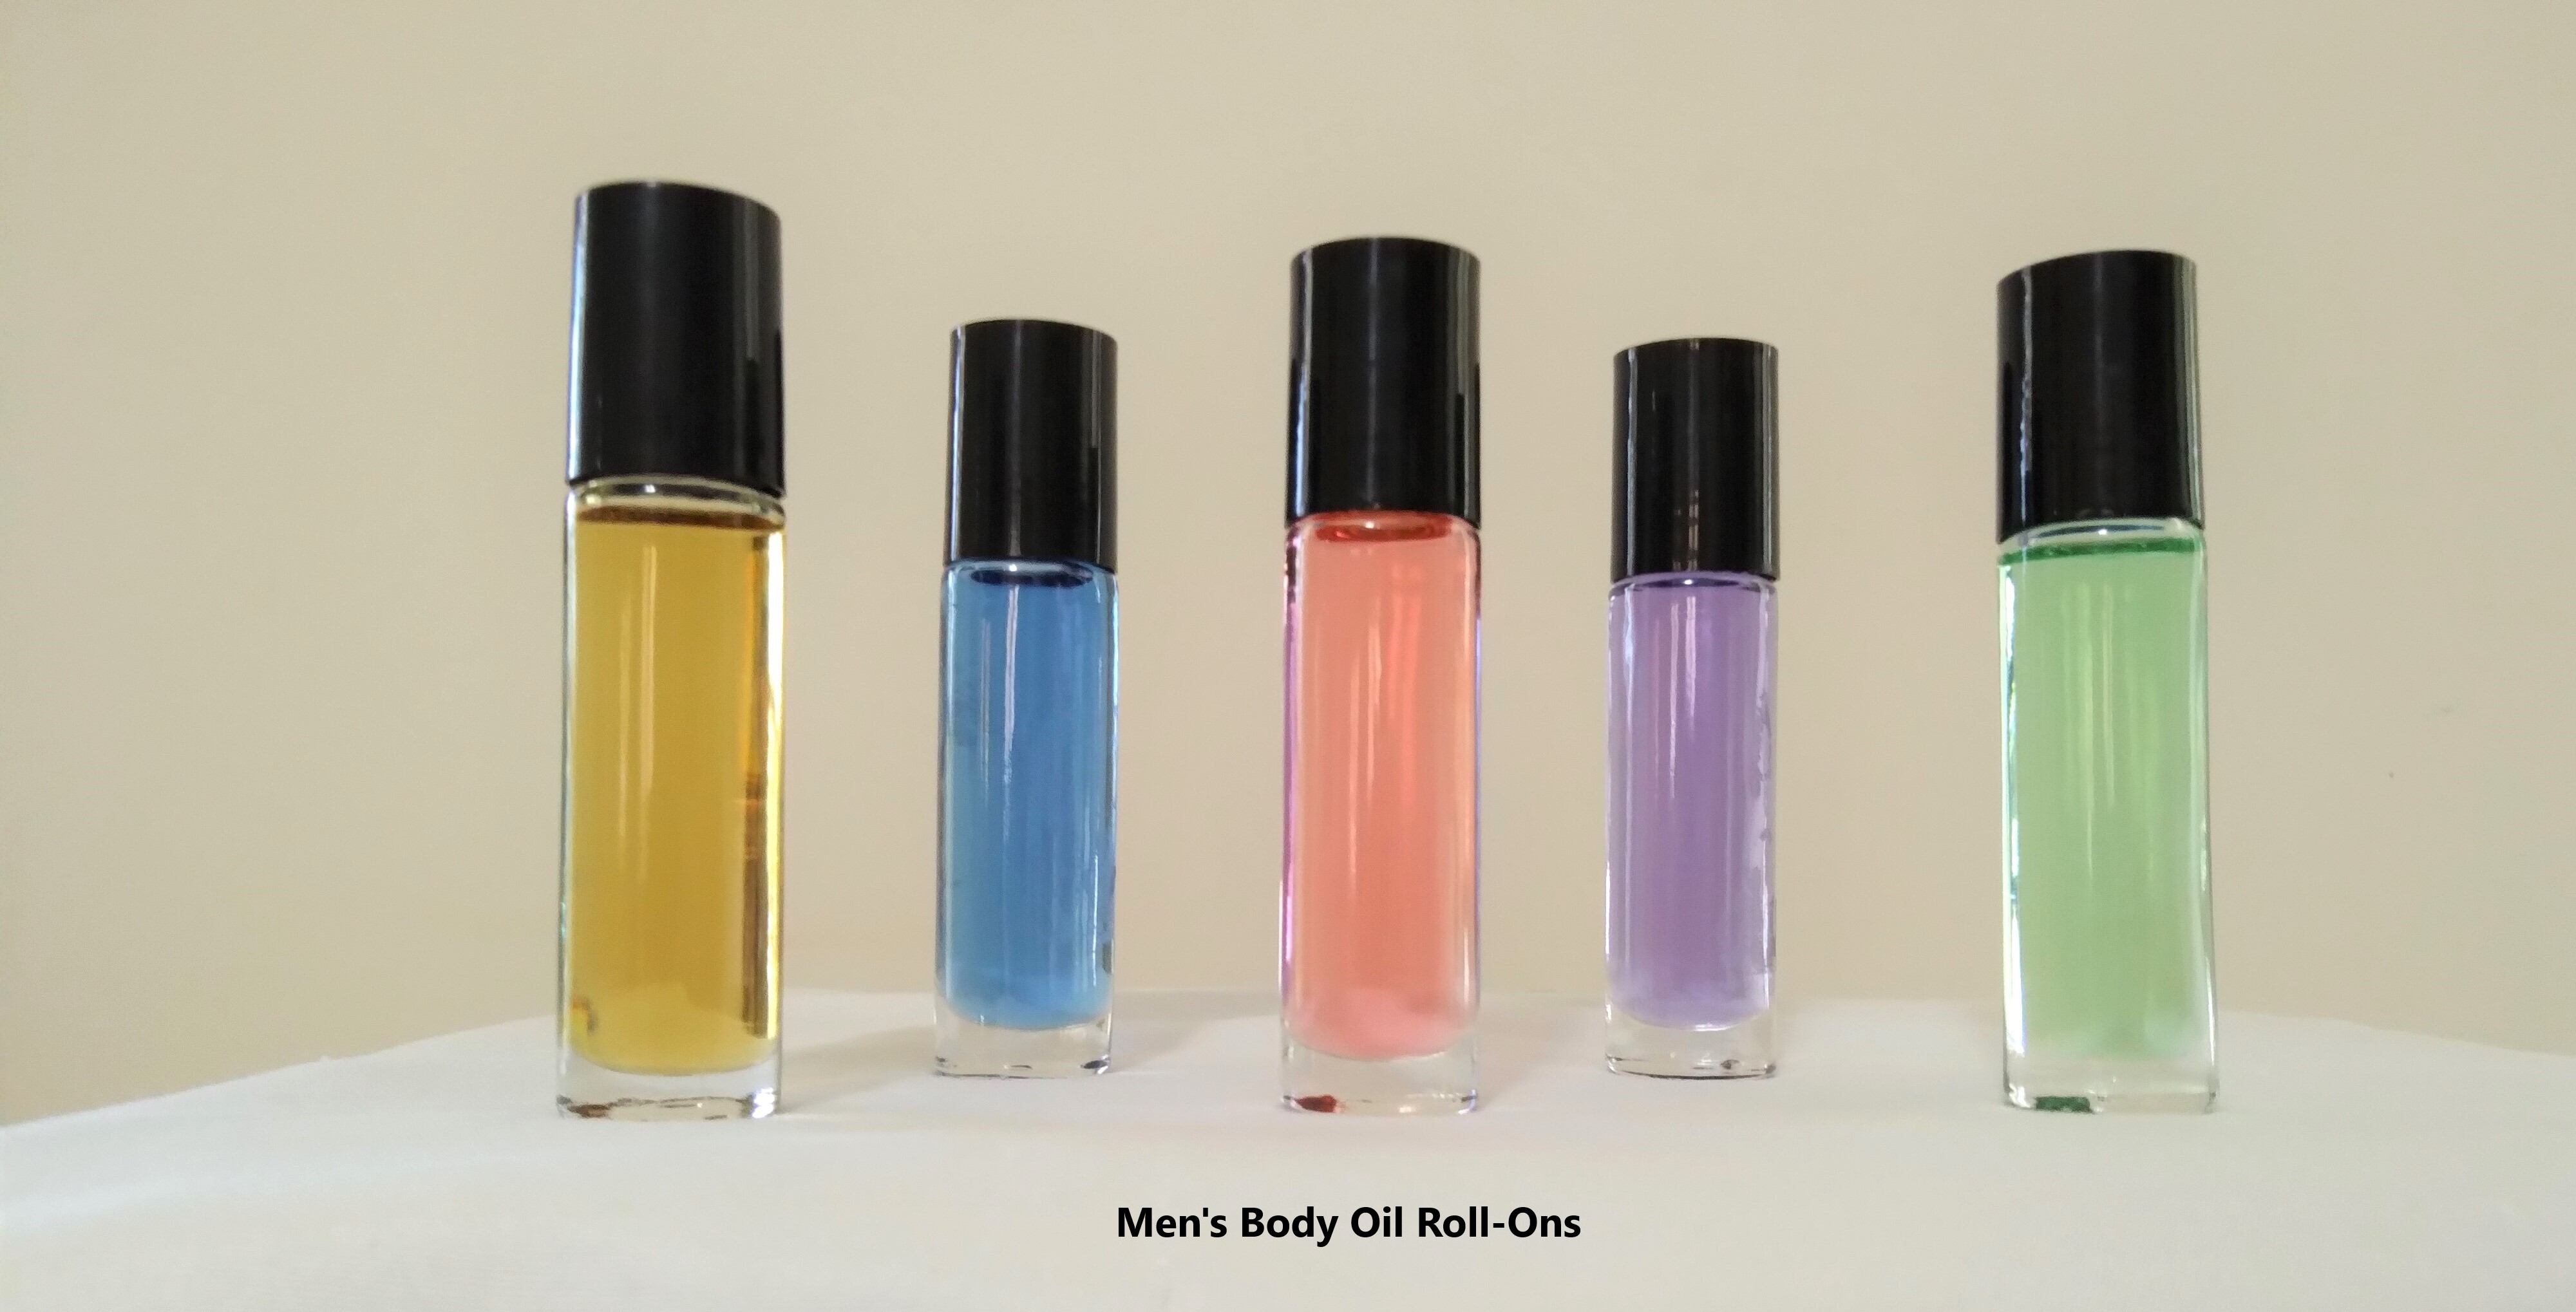 Men's Body Oils